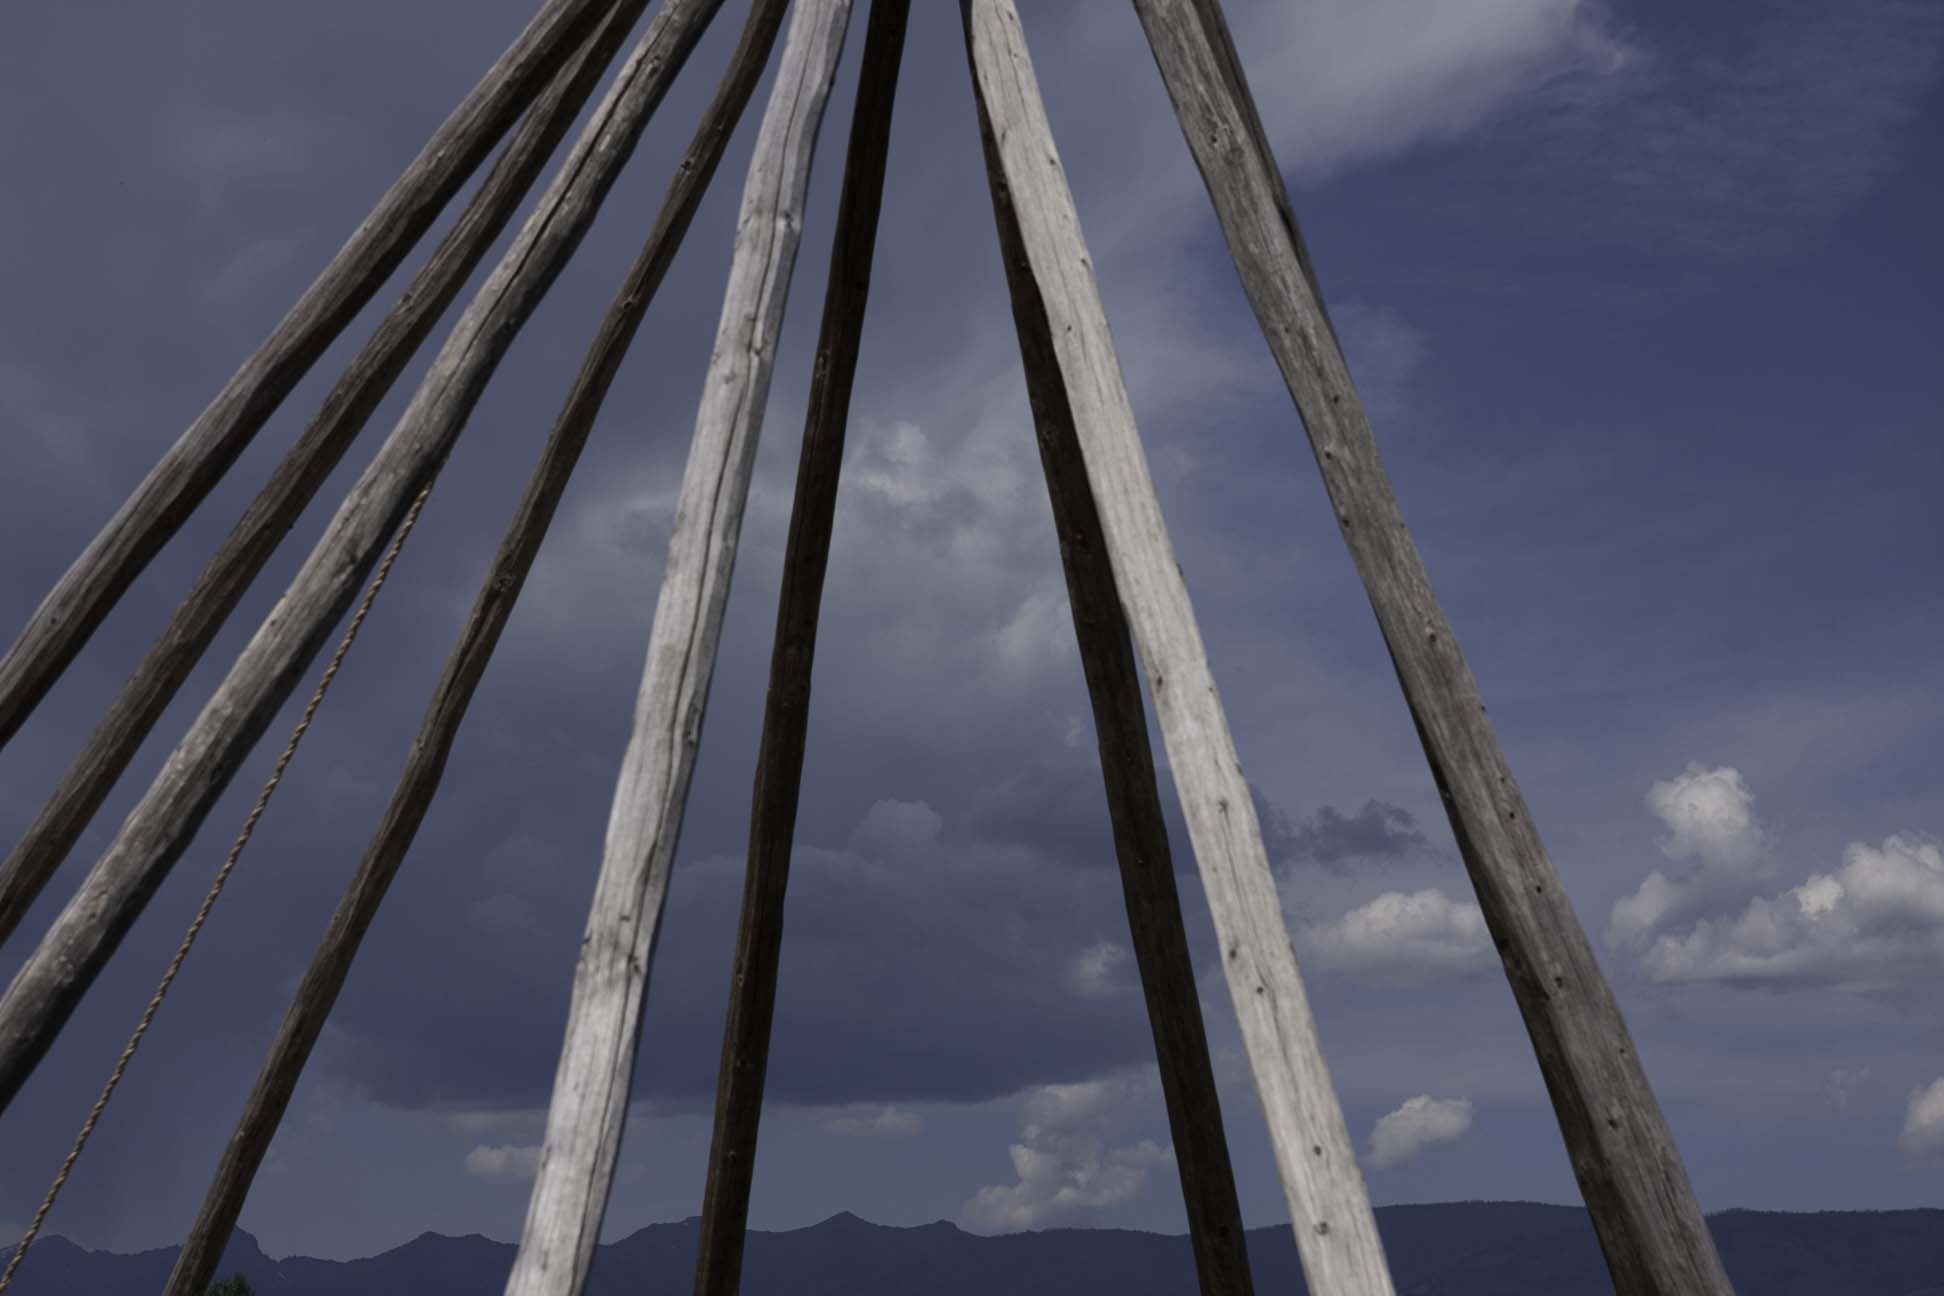 tepee sticks and montana sky.jpg